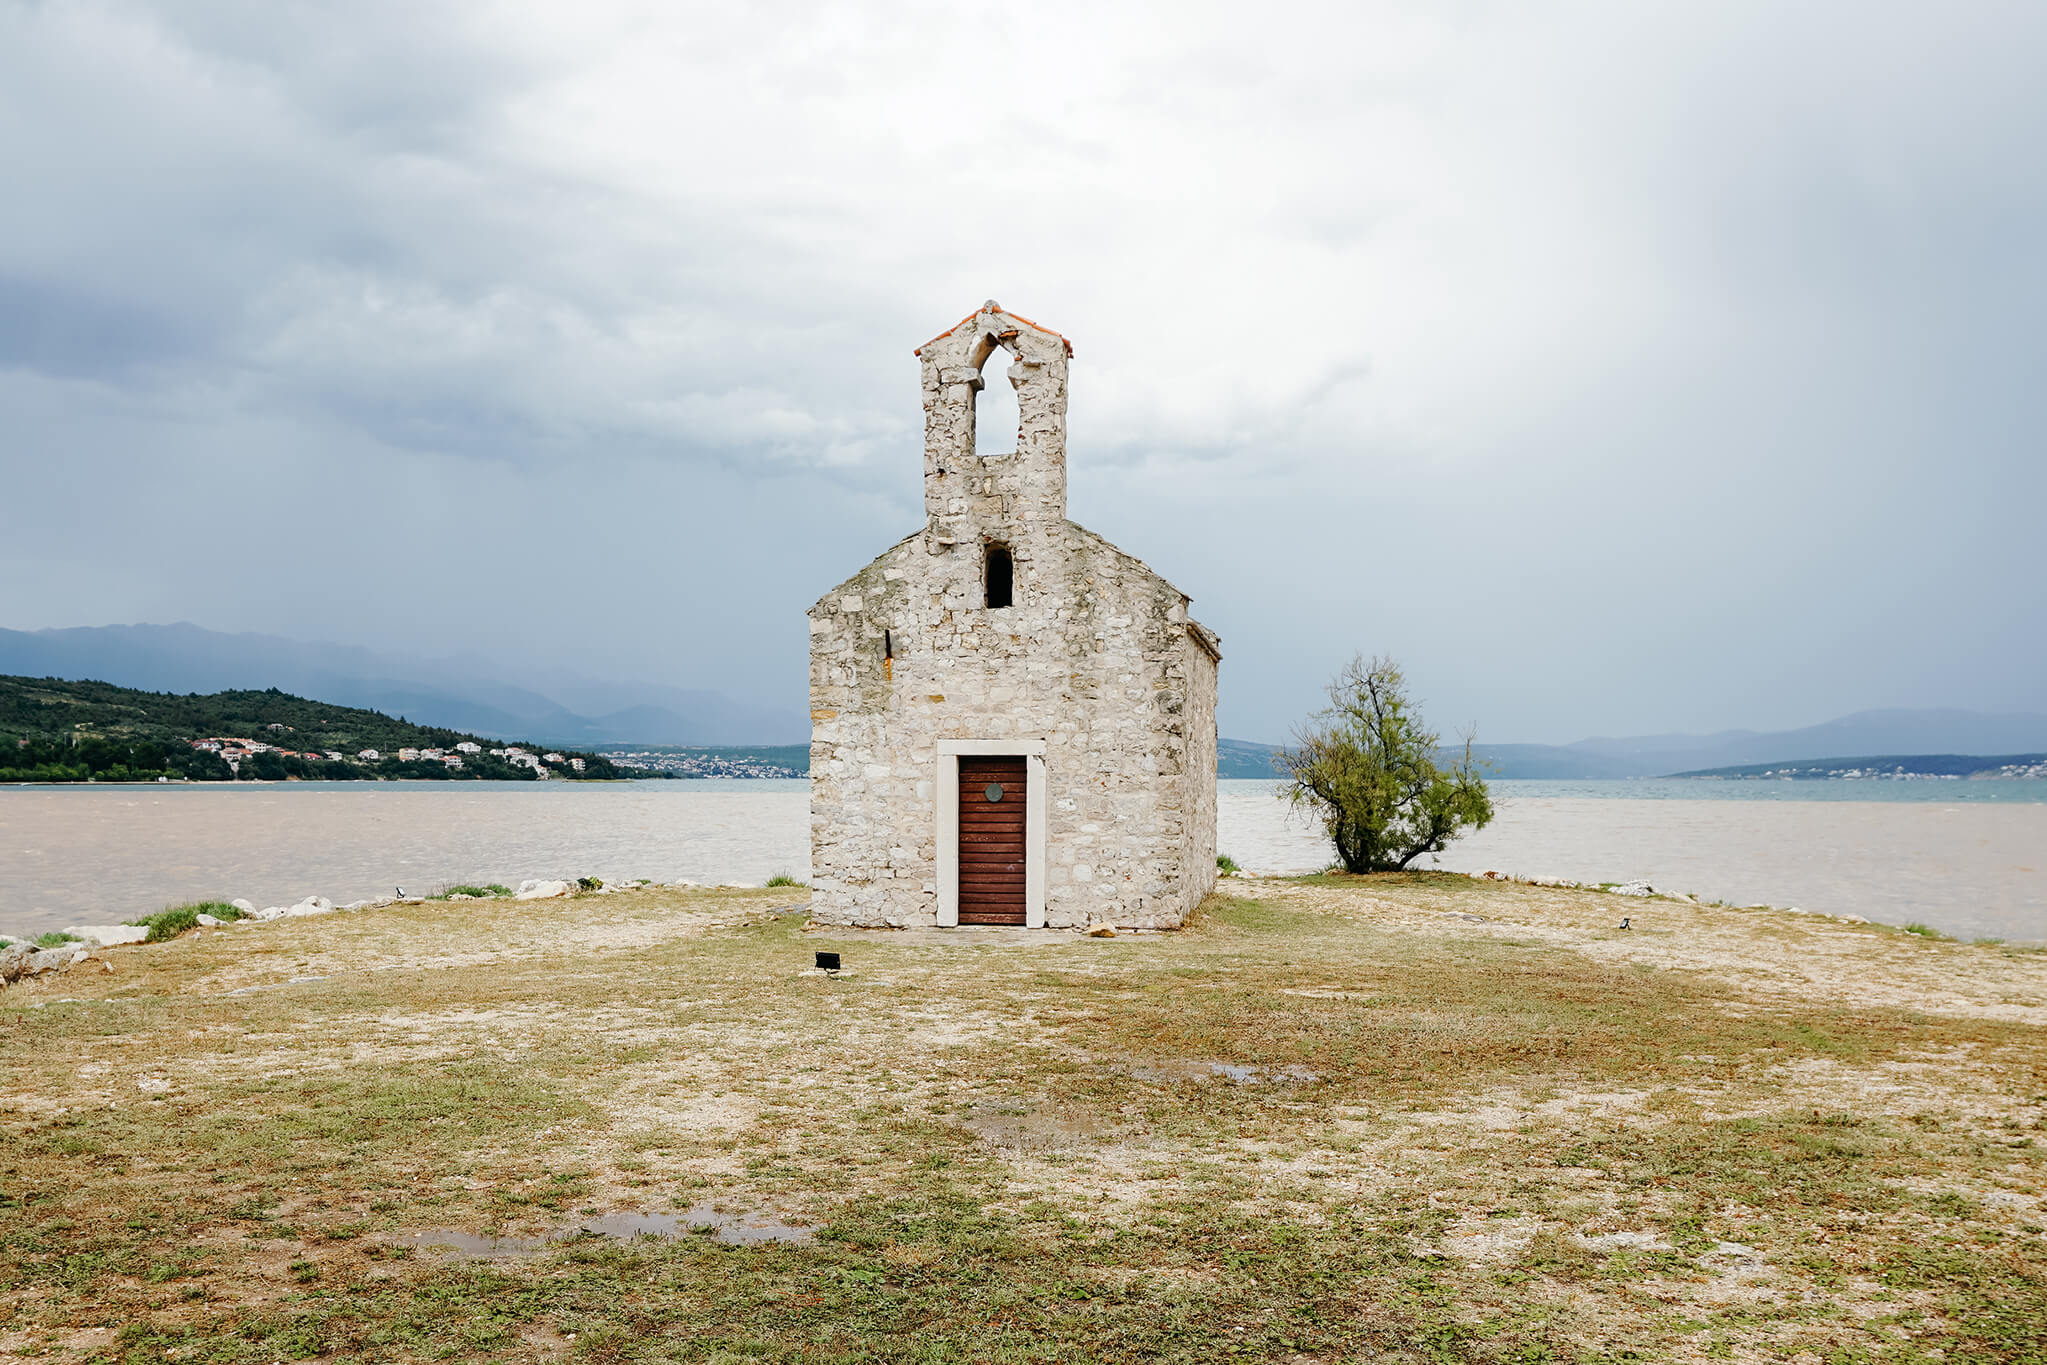 Heiraten auf einer Insel mit Kapelle in Dalmatien, Kroatien